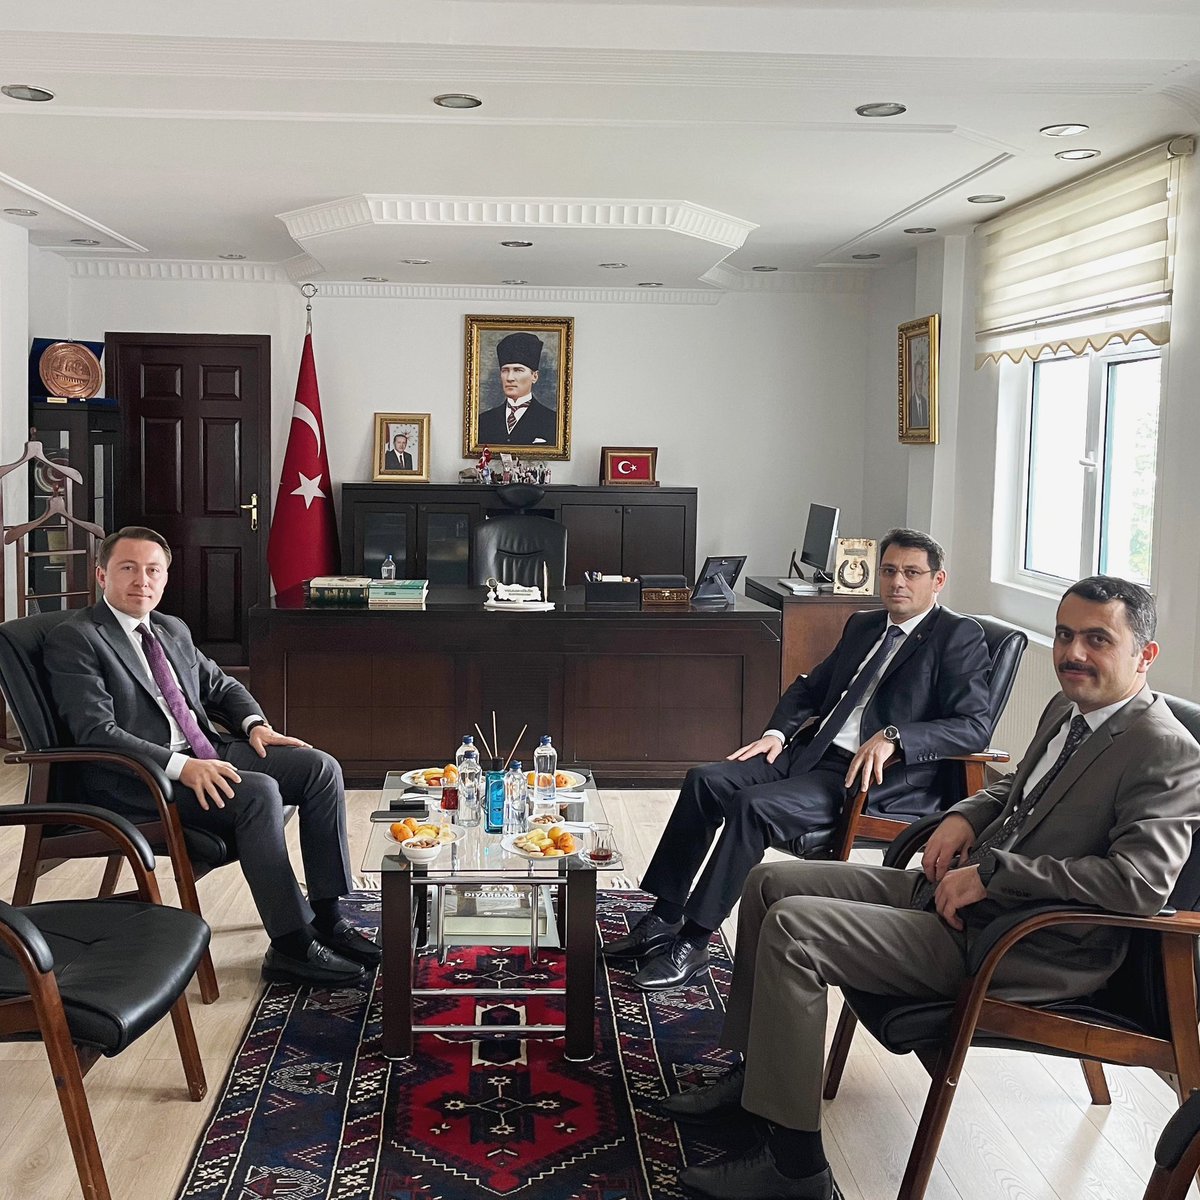 Diyarbakır Cumhuriyet Başsavcısı Sn. Mustafa Çelenk ve Diyarbakır Adalet Komisyon Başkanı Sn. Beytullah Özer’i ağırladık. Nazik ziyaretleri için saygılarımı sunarım. 

#Eğil #Diyarbakır